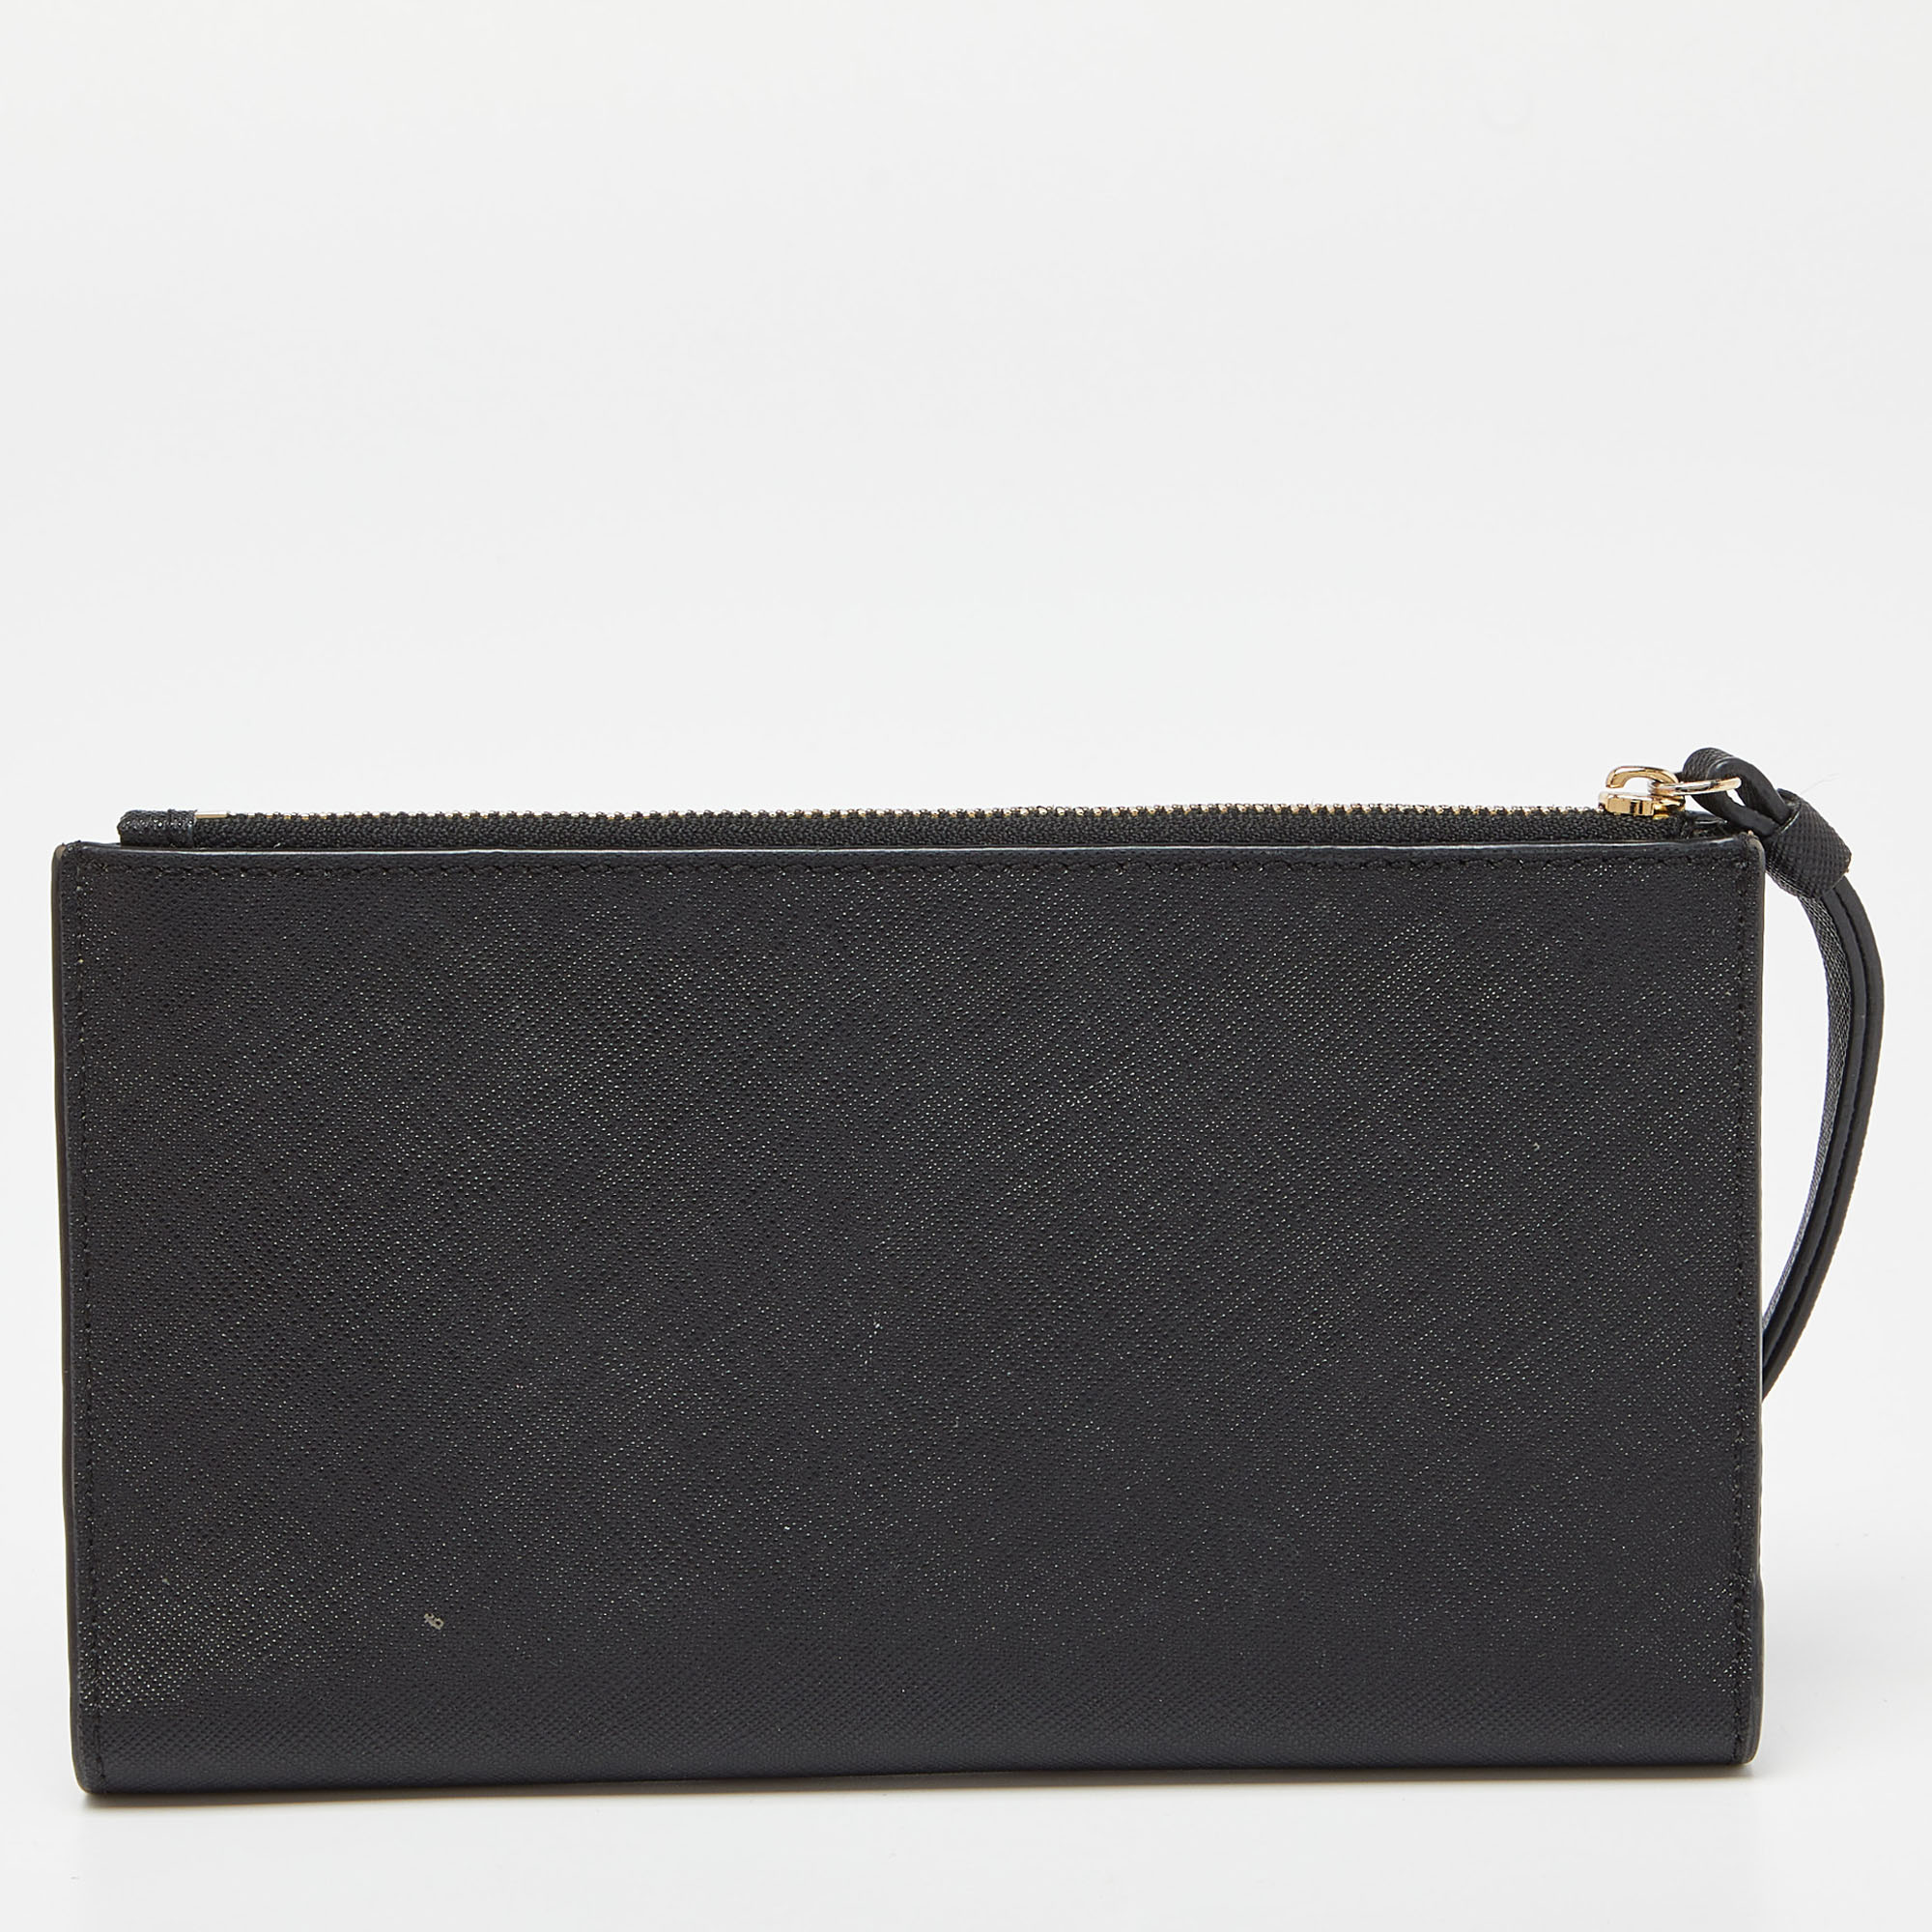 Kate Spade Black Saffiano Leather Spencer Bifold Wristlet Wallet